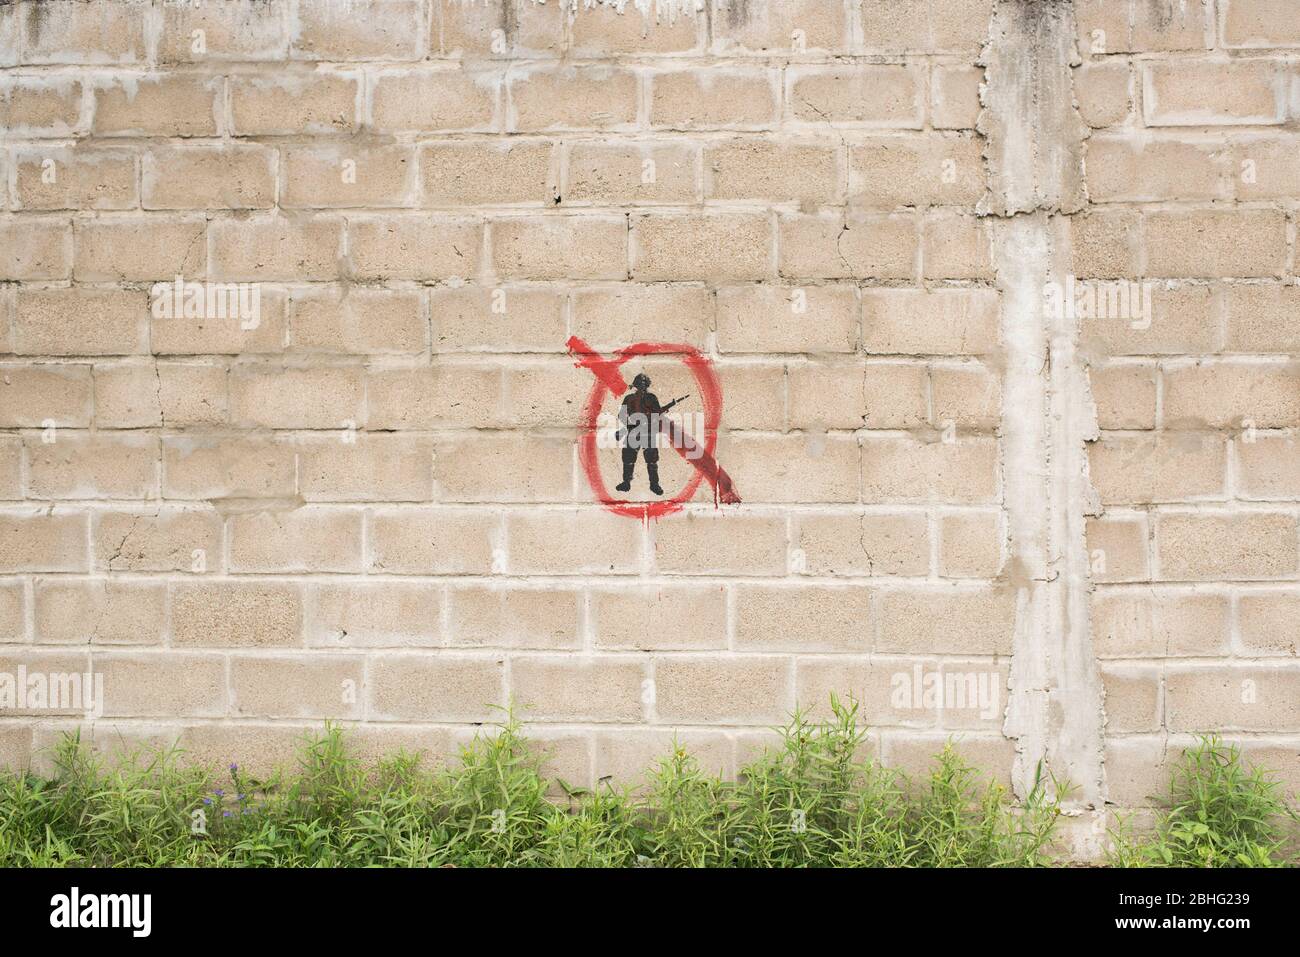 Carmelo, Colonia / Uruguay; 27 de diciembre de 2018: Pared de bloque de concreto con un símbolo pintado: Una silueta de soldado negro tachada de rojo. Foto de stock